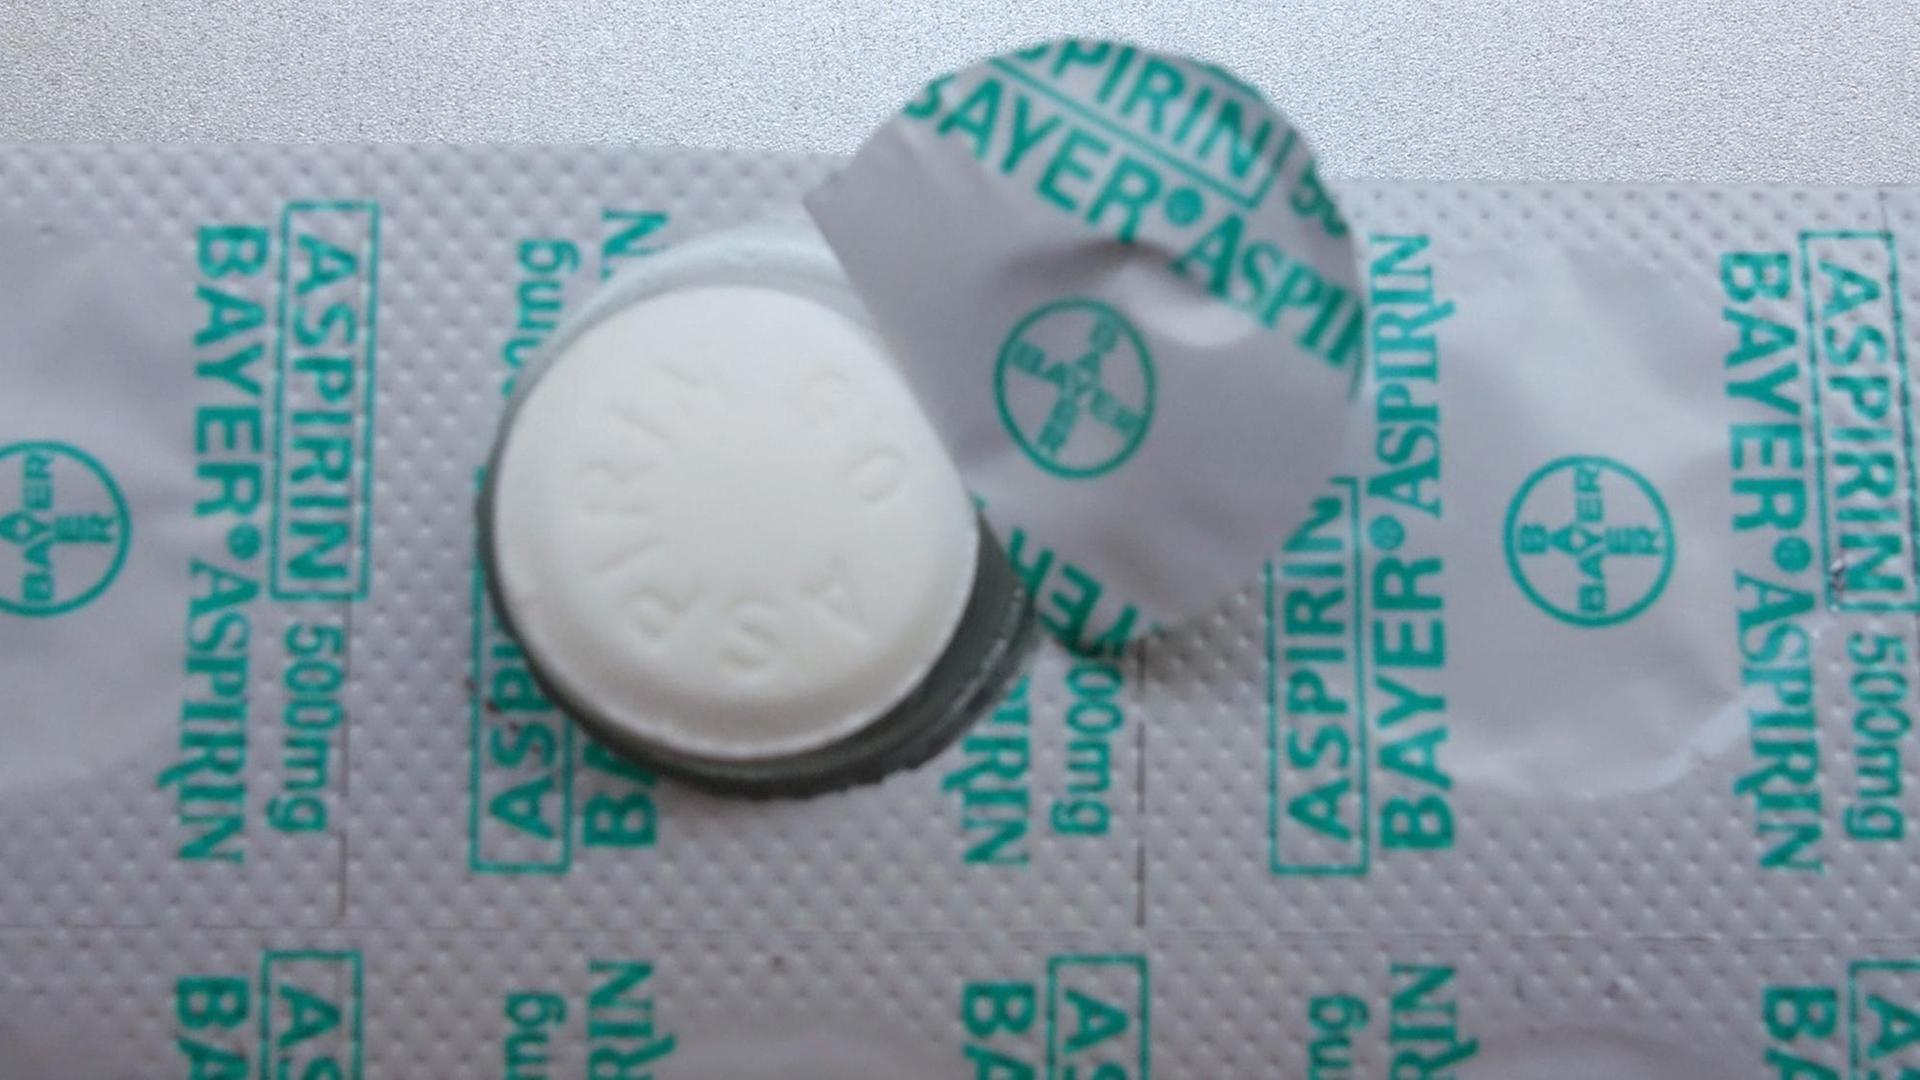 Ein Briefchen mit Aspirin-Tabletten